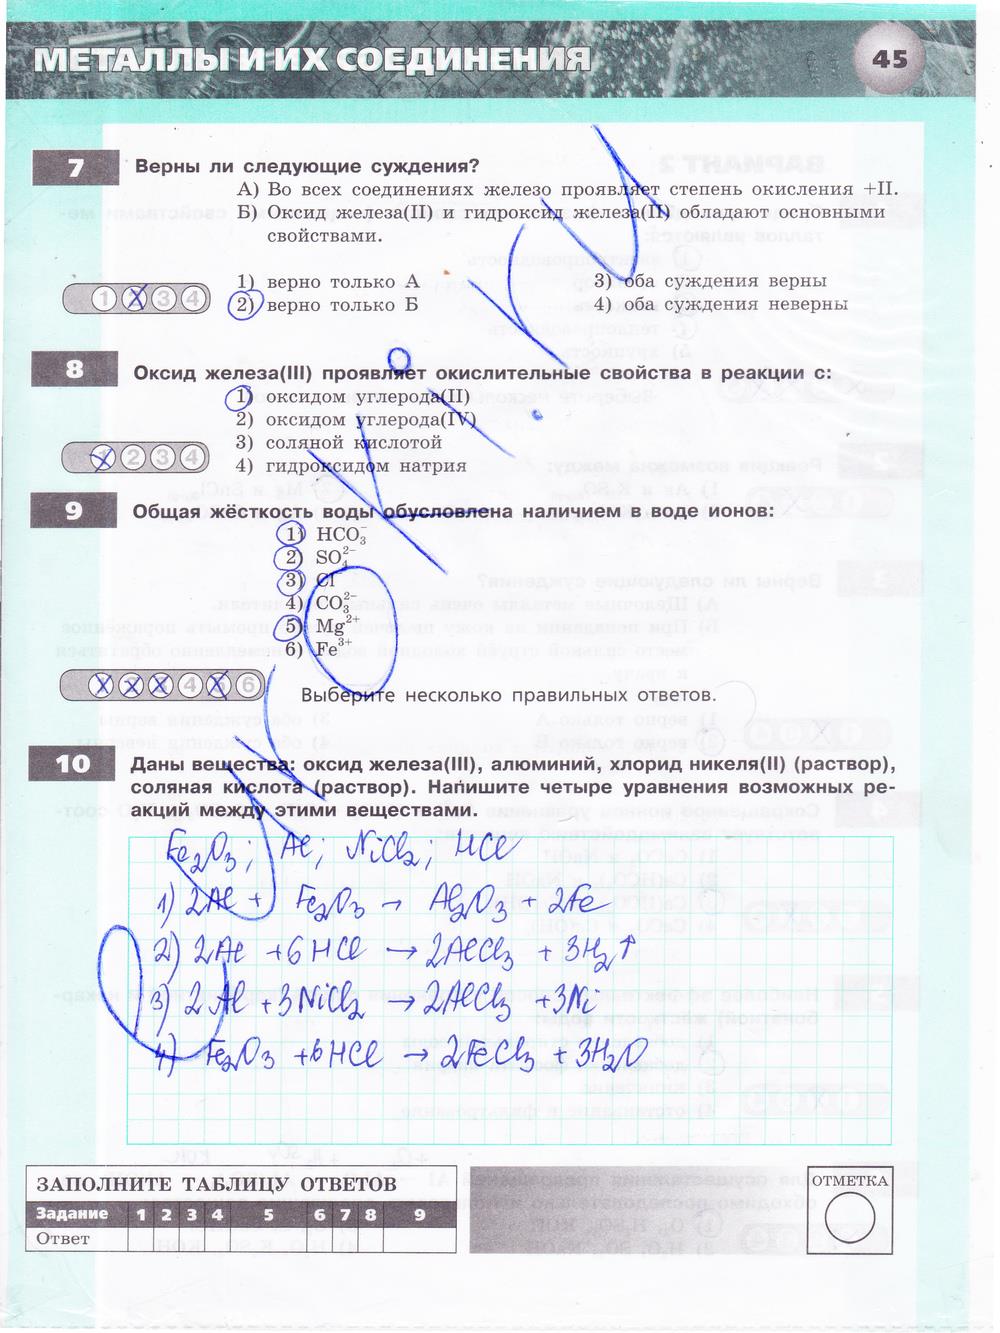 гдз 9 класс тетрадь-экзаменатор страница 45 химия Бобылева, Бирюлина